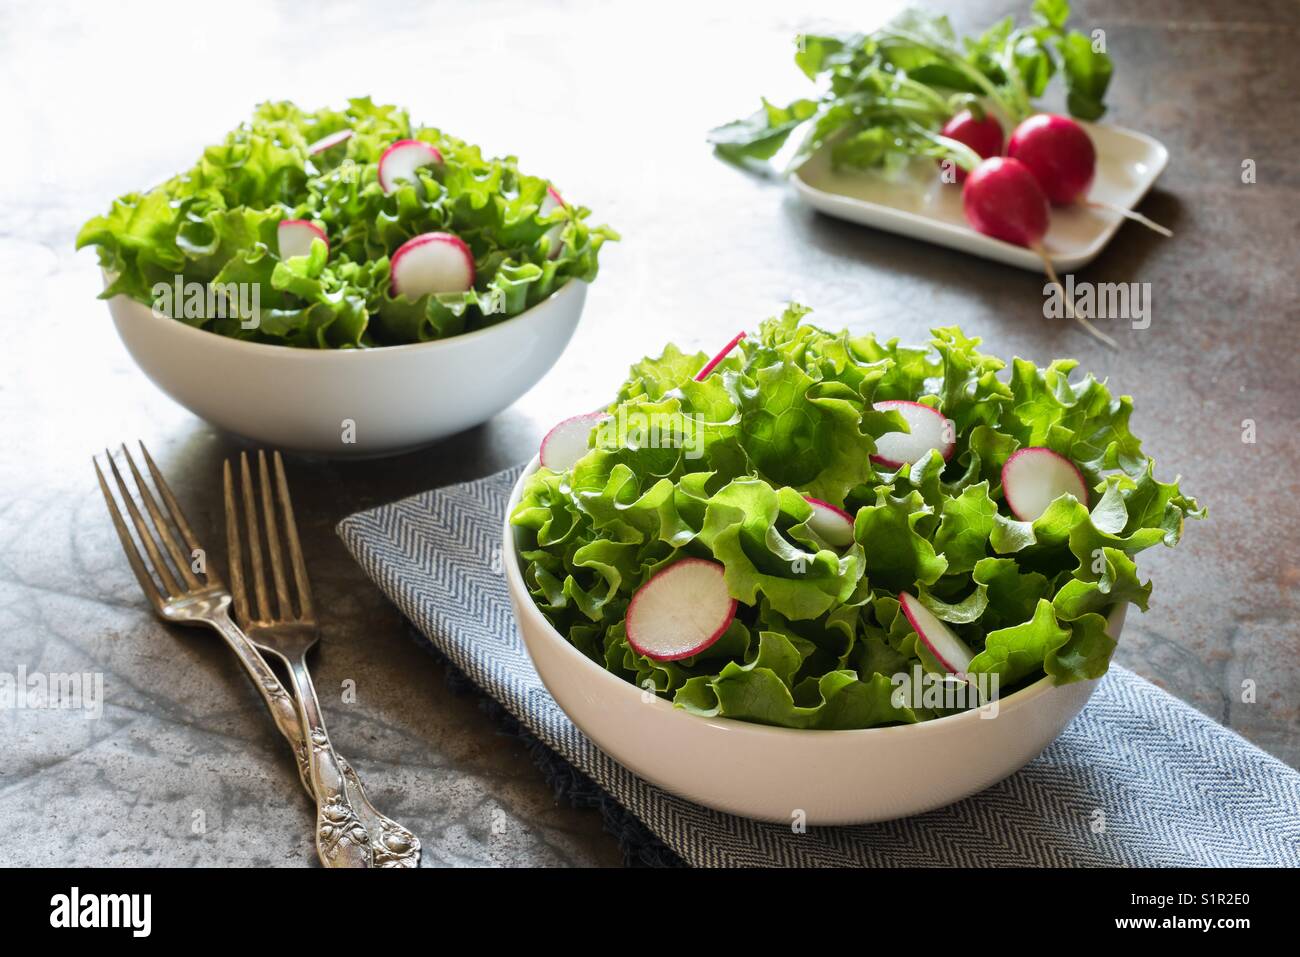 Leaf lettuce and radish salad Stock Photo